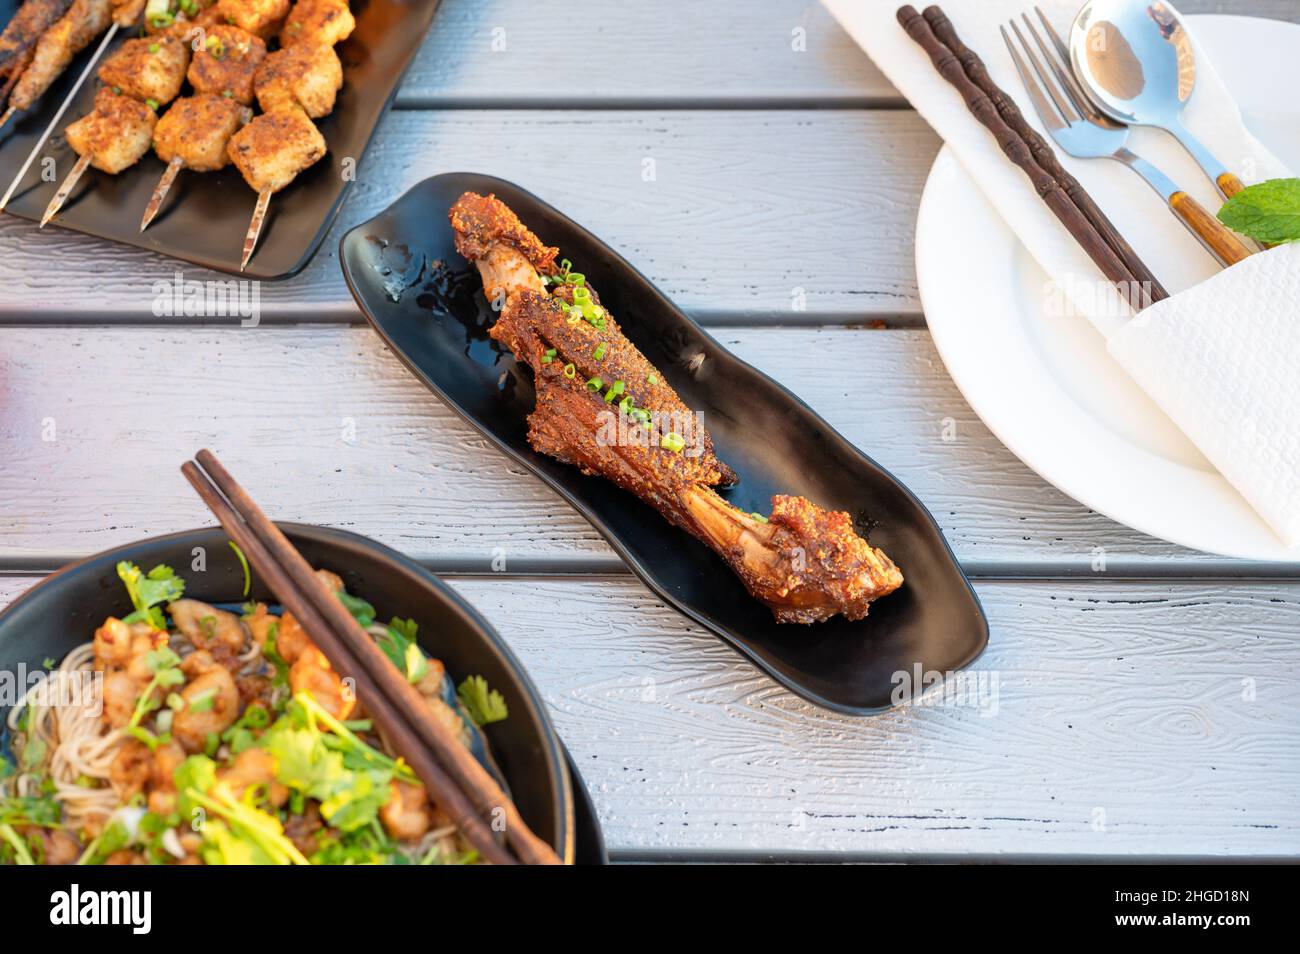 Barbecue d'agneau chinois servi sur une assiette dans un restaurant avec vue sur le dessus.Cuisine de rue barbecue asiatique résumé, encas de nuit populaire Banque D'Images